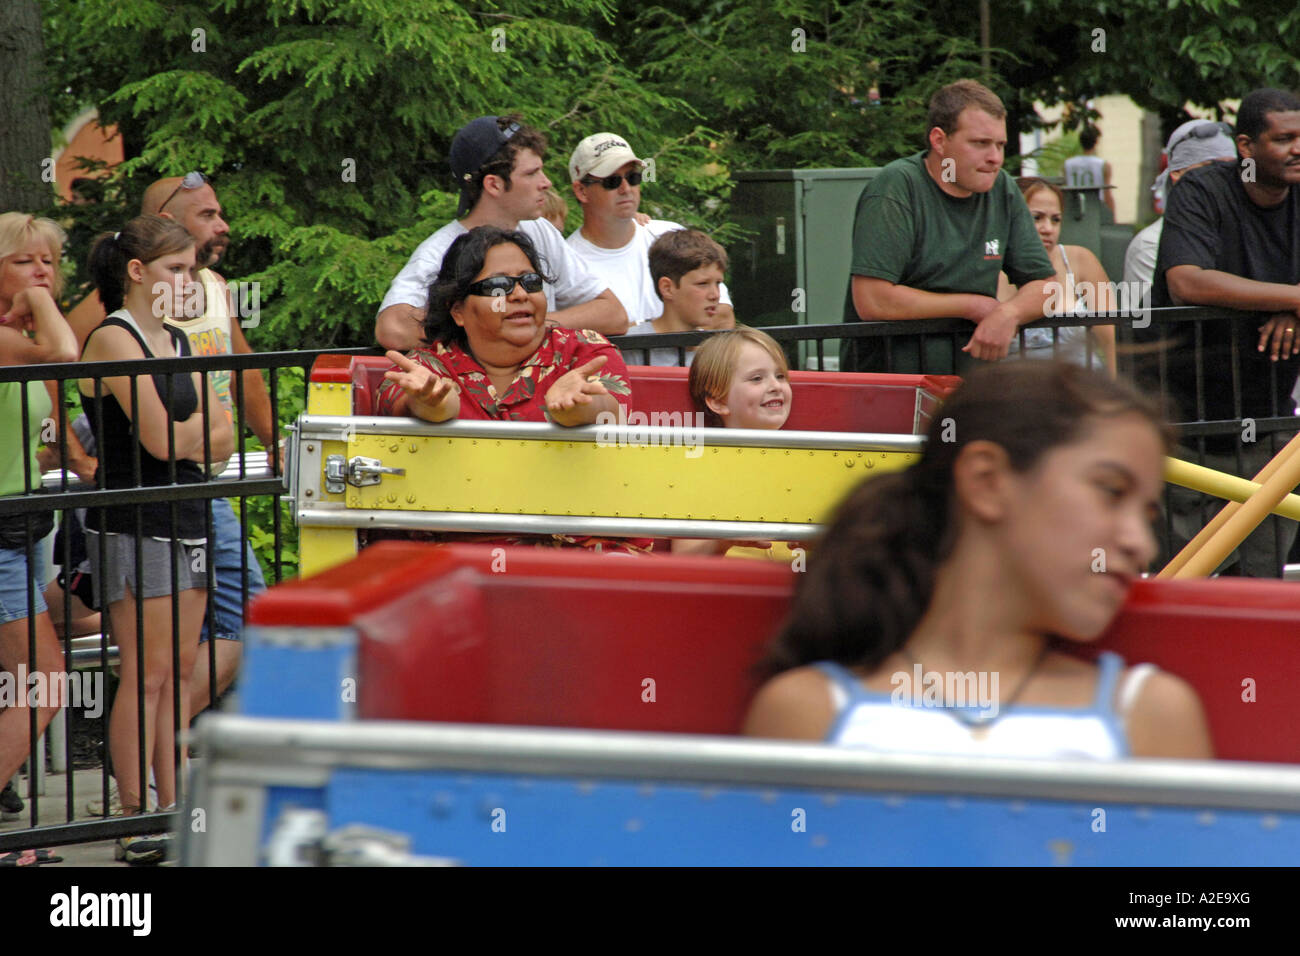 Les personnes bénéficiant d'une ride at Cedar Point Amusement Park Sandusky, OH Banque D'Images